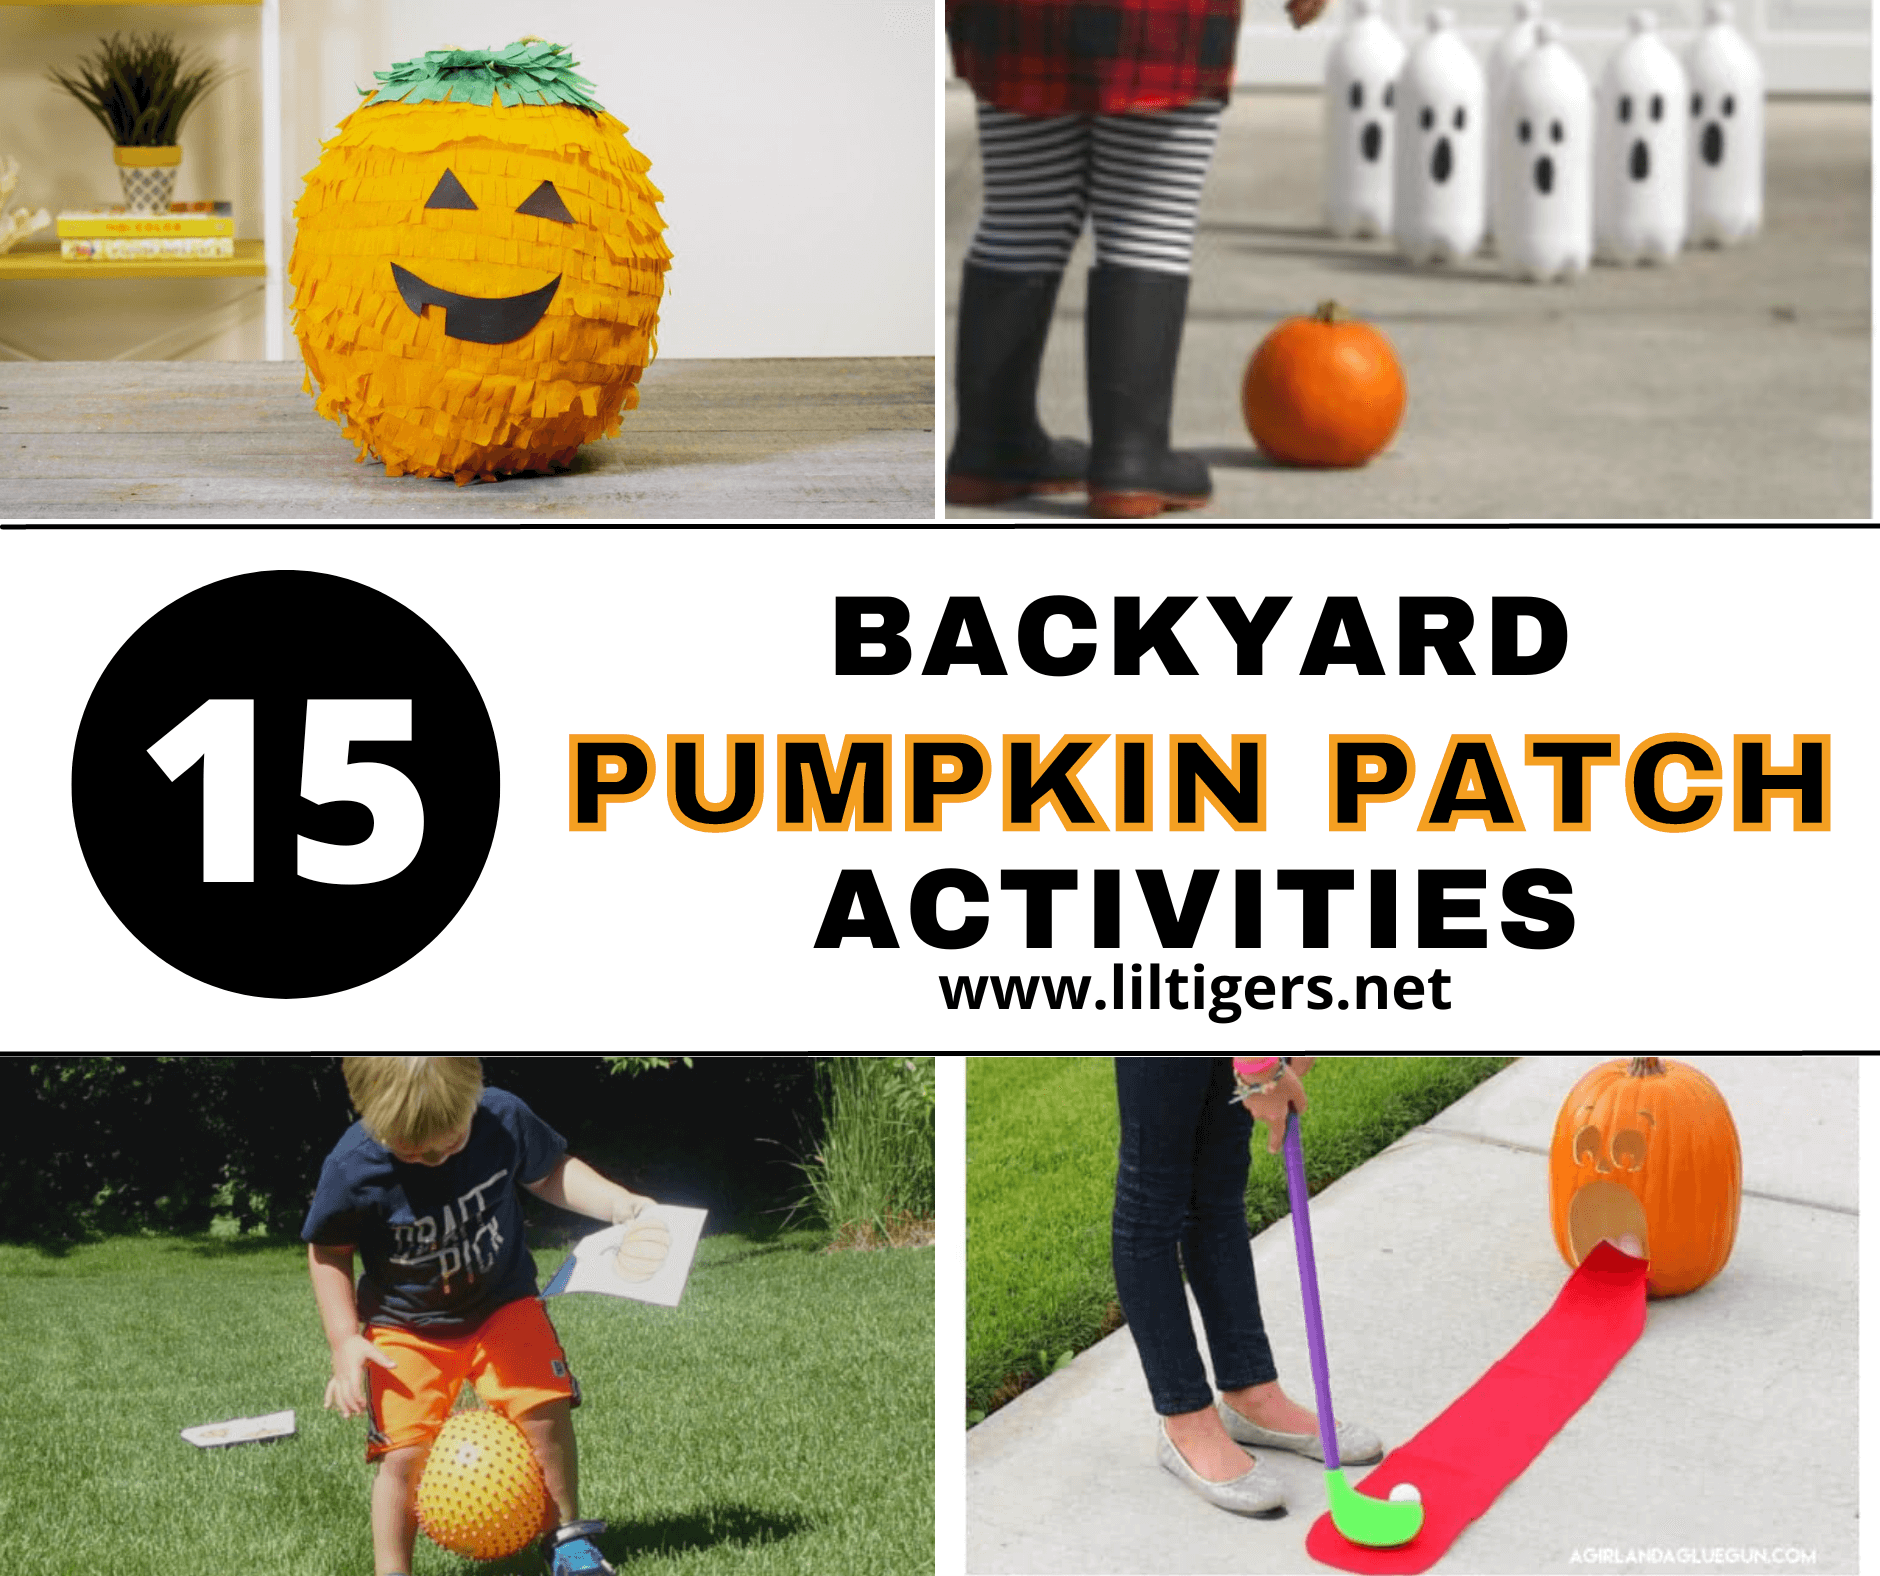 backyard pumpkin patch ideas and activities